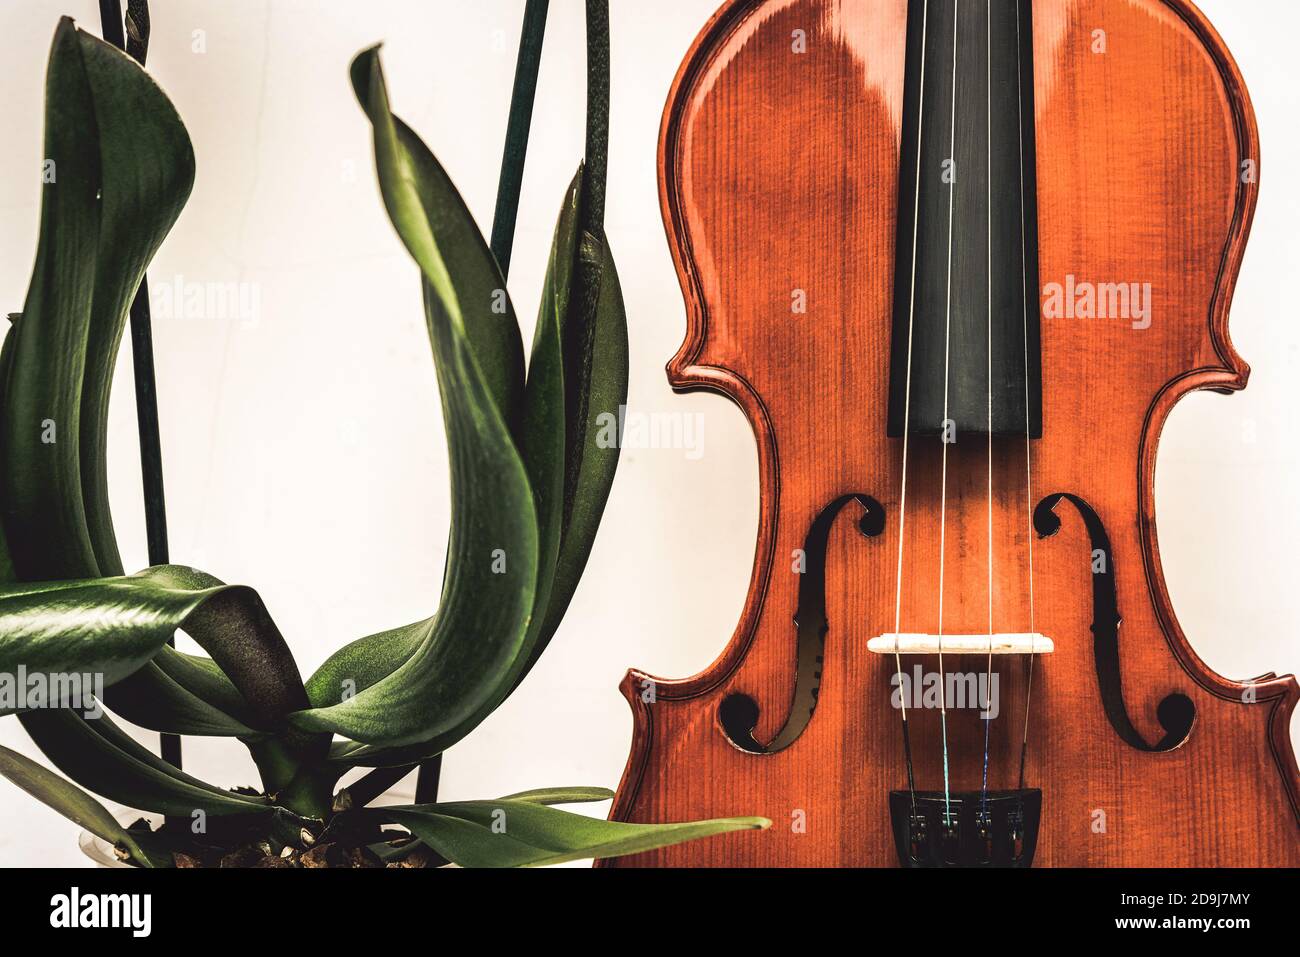 Gros plan de la Soundboard pour violon et des feuilles et des tiges d'orchidée. Beauté de la nature et de l'art Banque D'Images